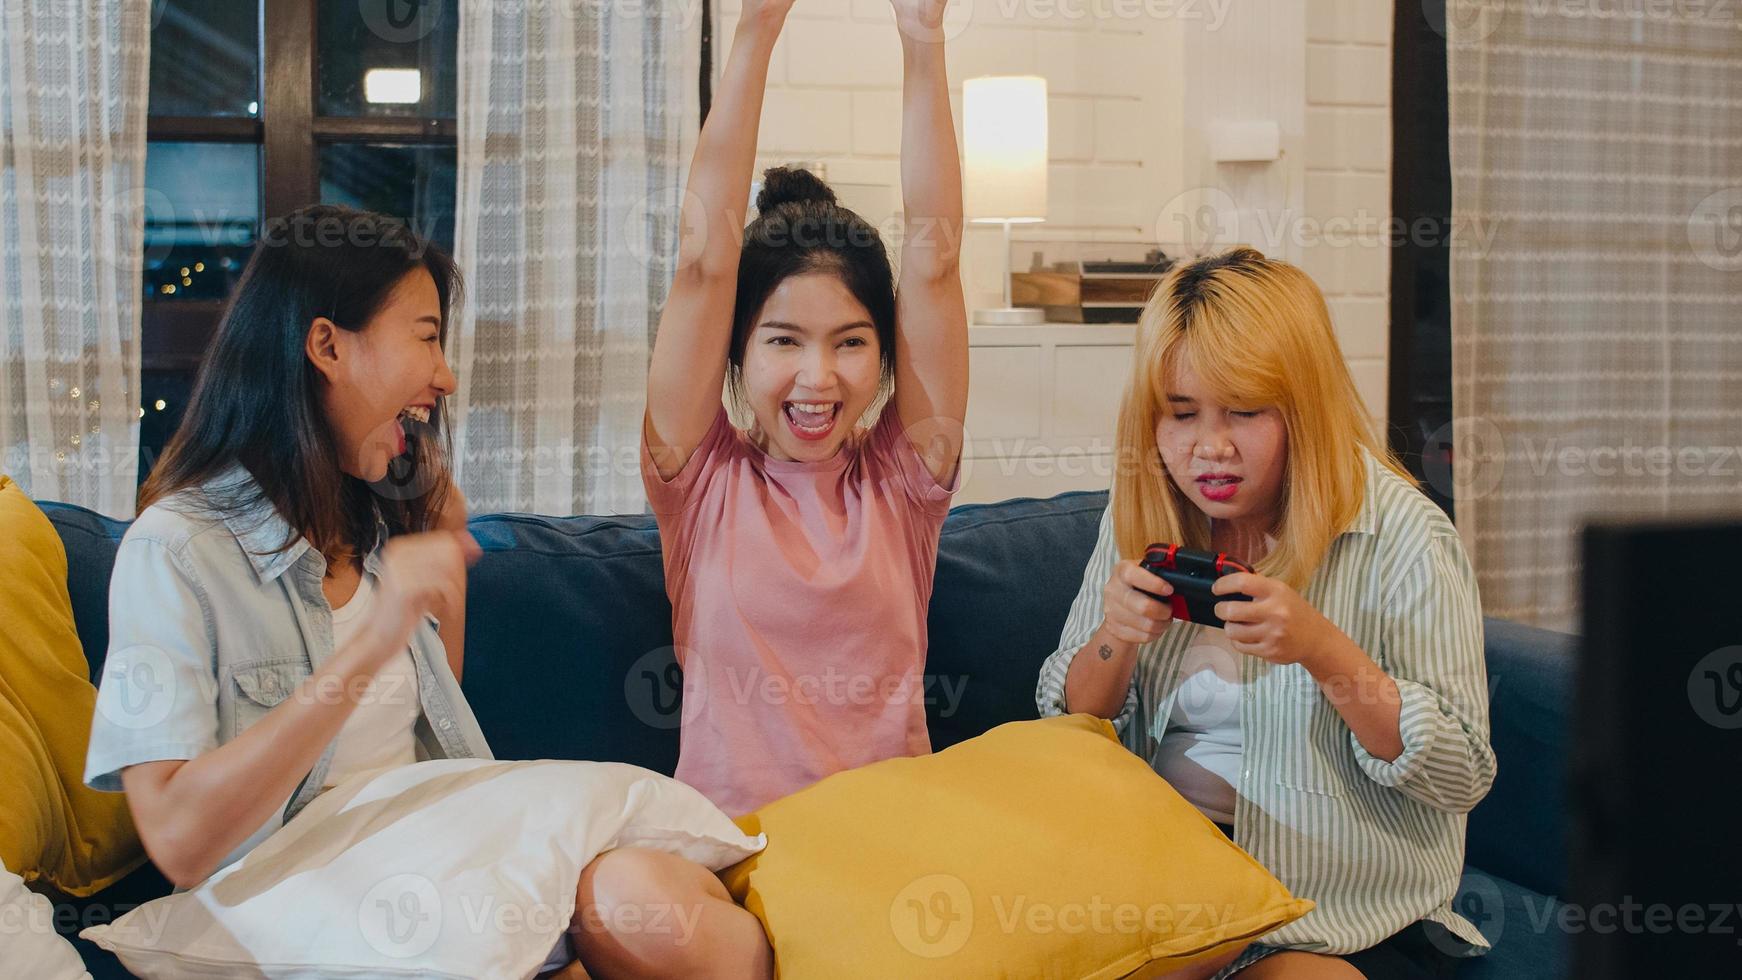 groep aziatische vrouwen koppelt spelletjes thuis, vrouwen met joystick hebben een grappig moment samen op de bank in de woonkamer in de nacht. tiener jonge vriend voetbalfan, vieren vakantieconcept. foto